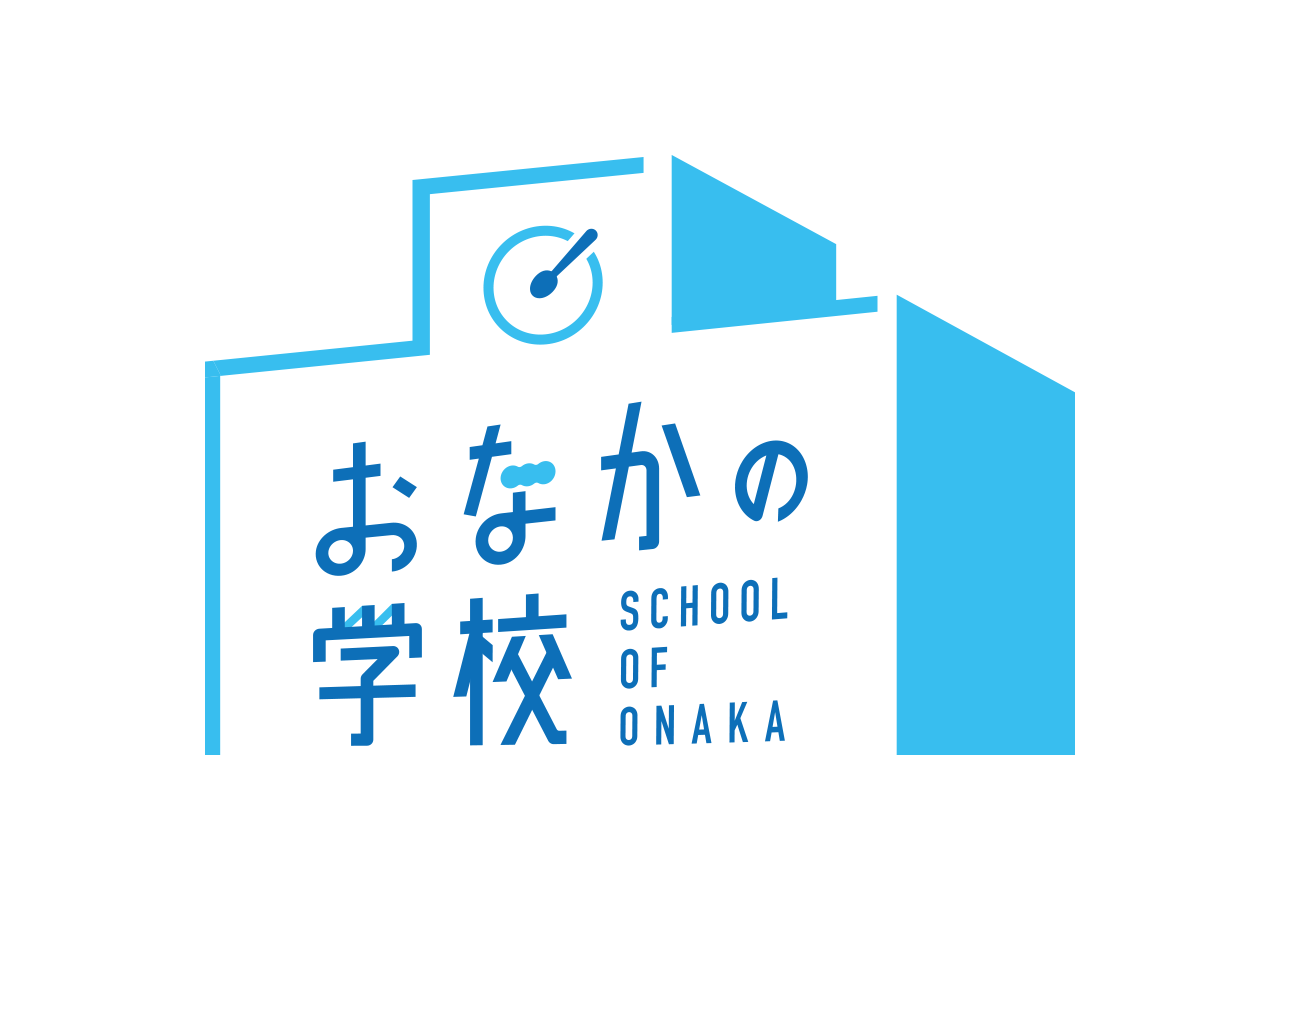 おなかの学校 SCHOOL OF ONAKA